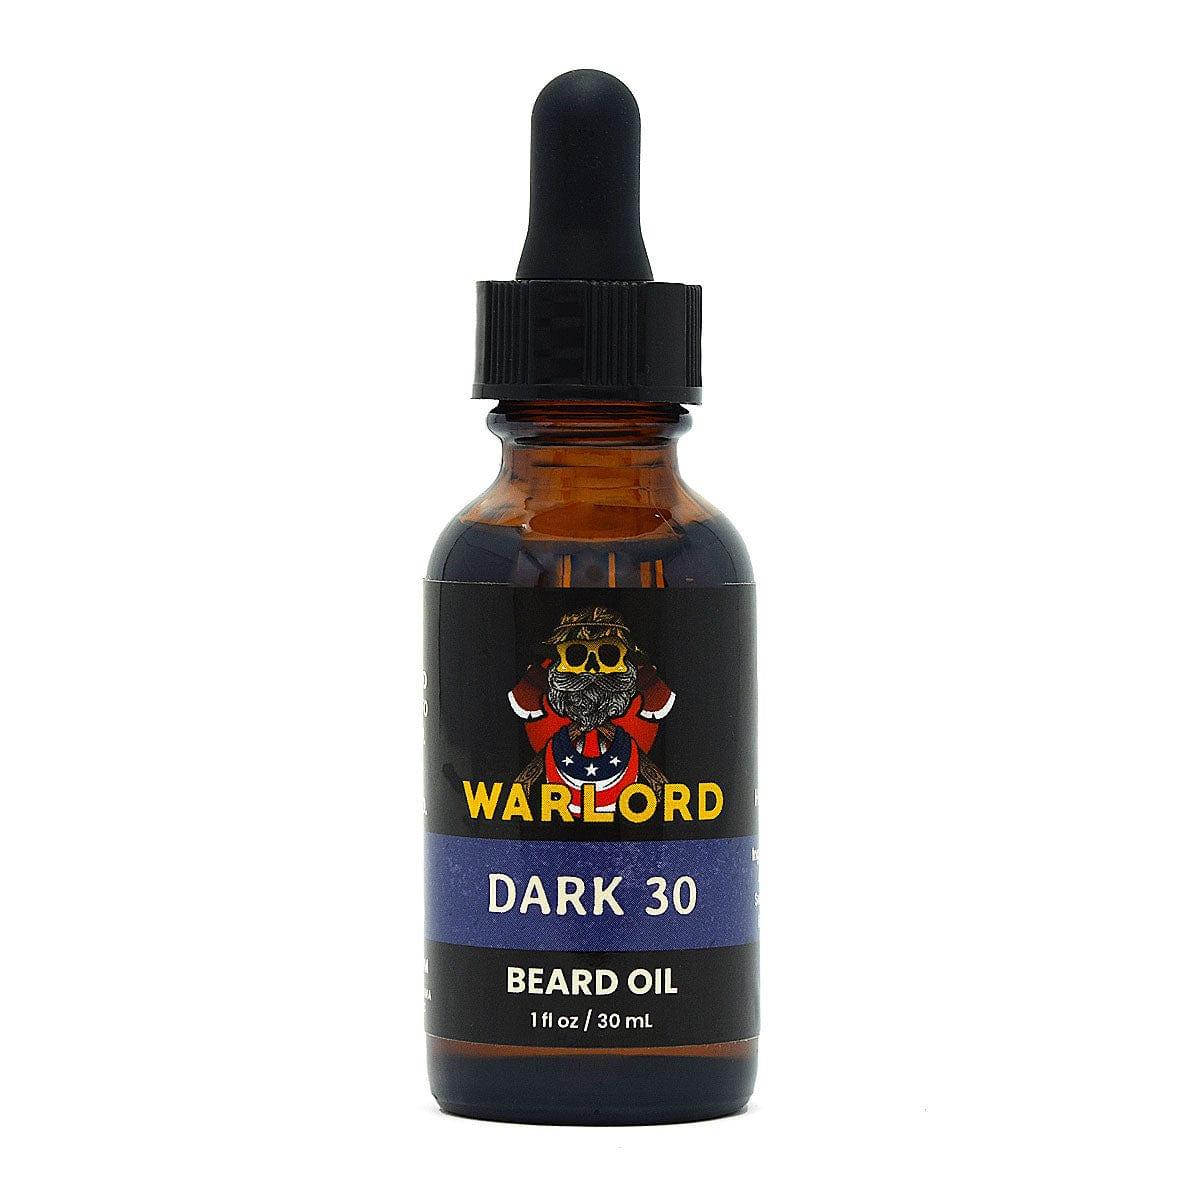 Dark 30 Beard Oil - Warlord - Men's Grooming Essentials